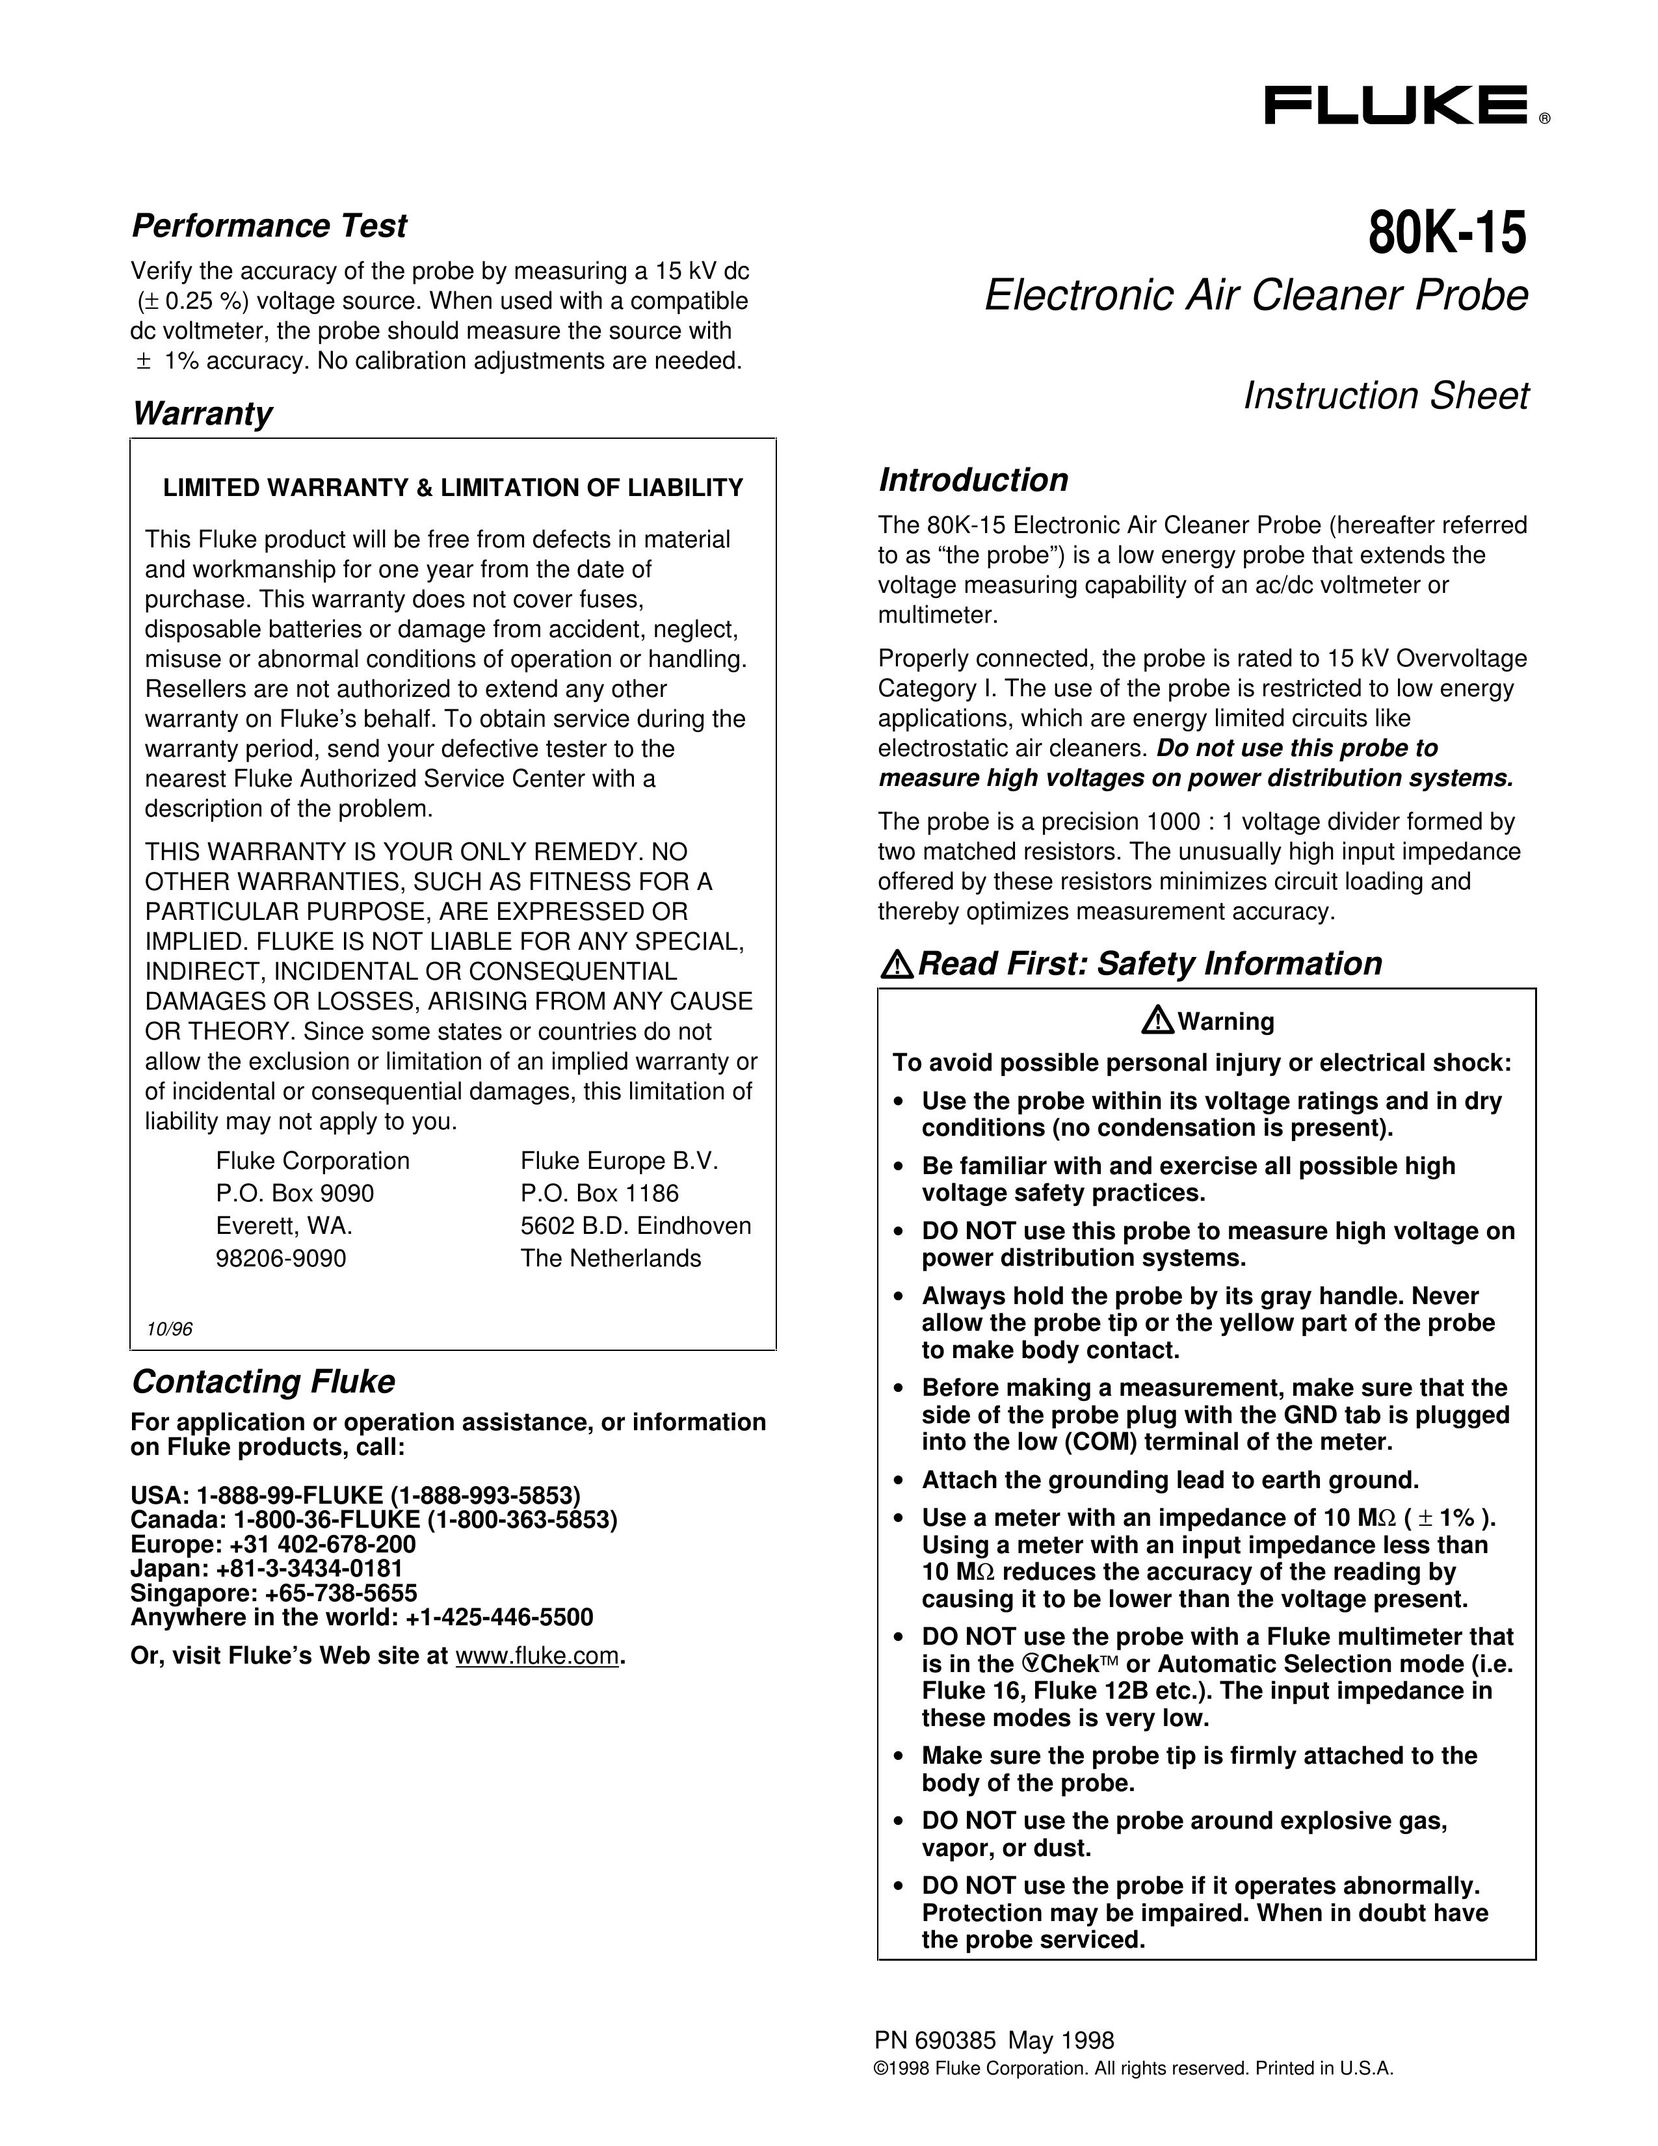 Fluke 80K-15 Air Cleaner User Manual